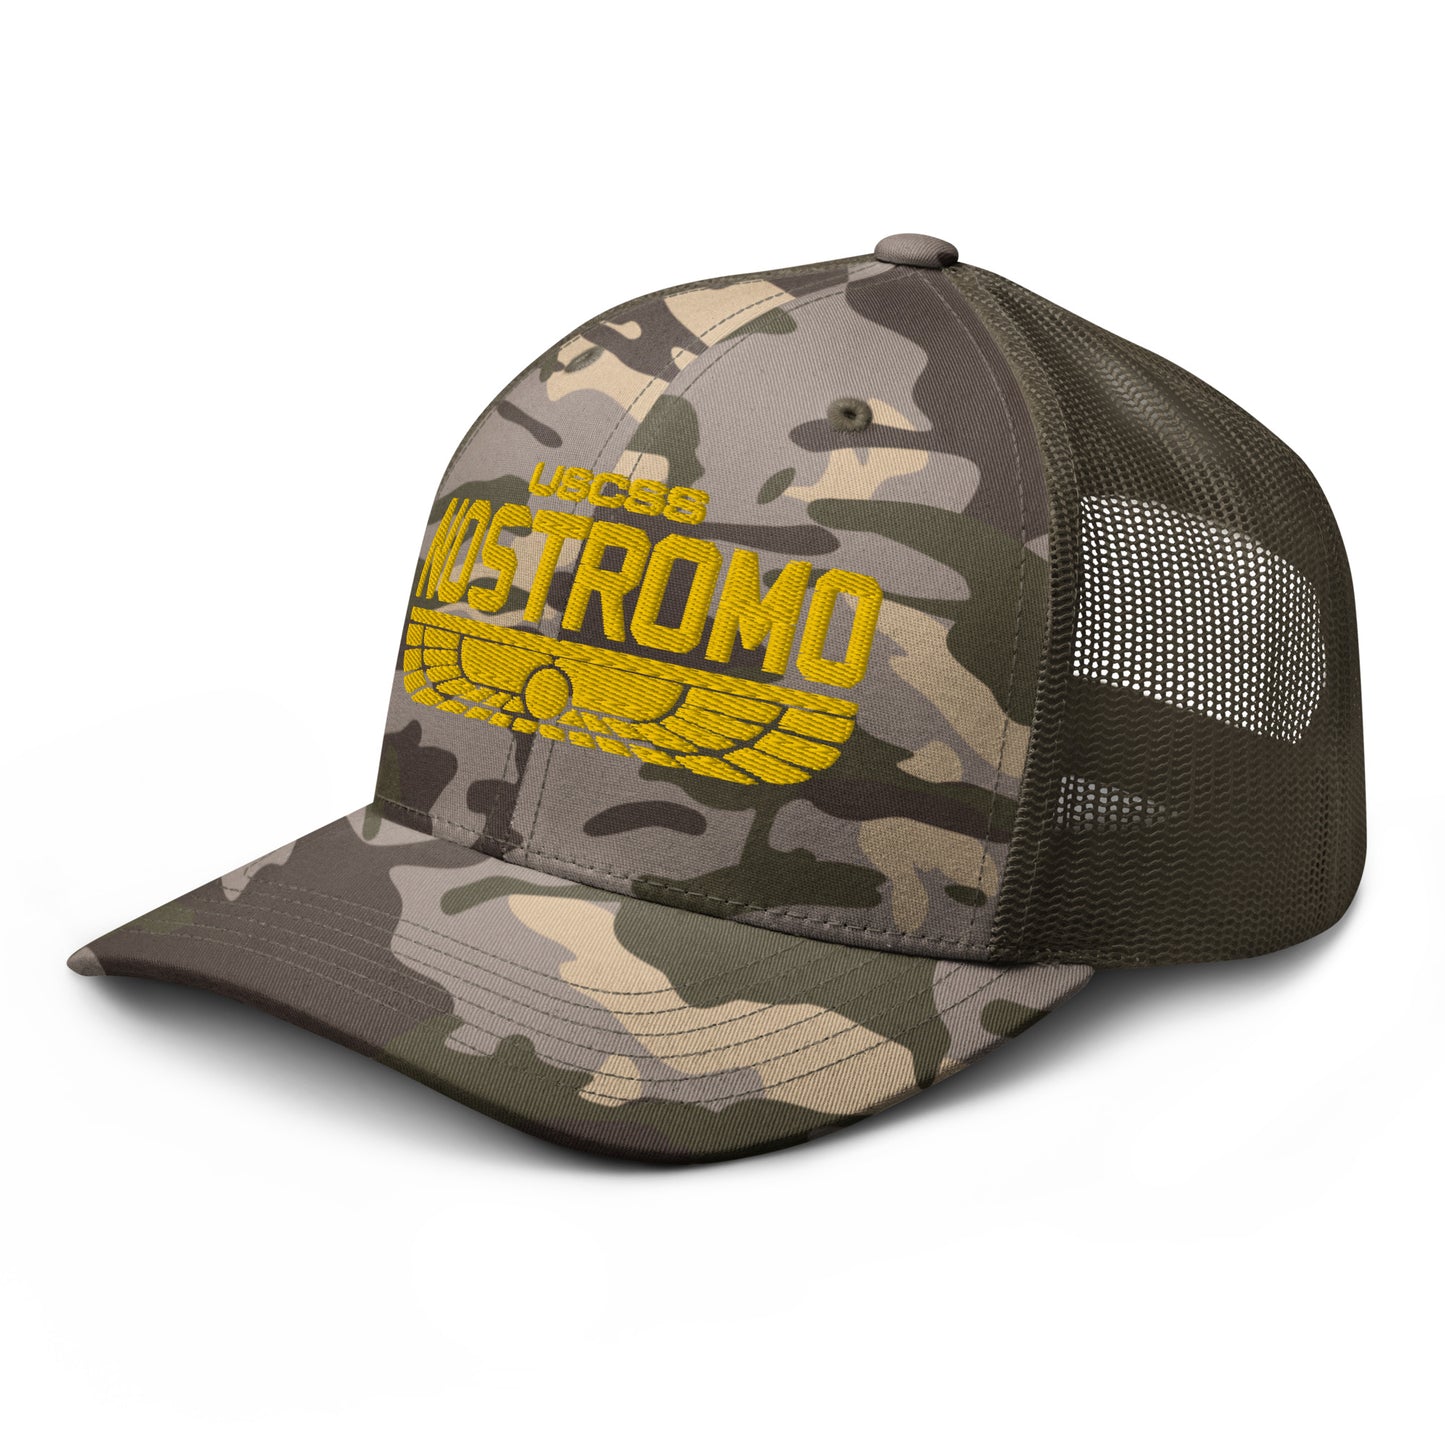 Nostromo Camouflage trucker hat, Alien Movie Cap